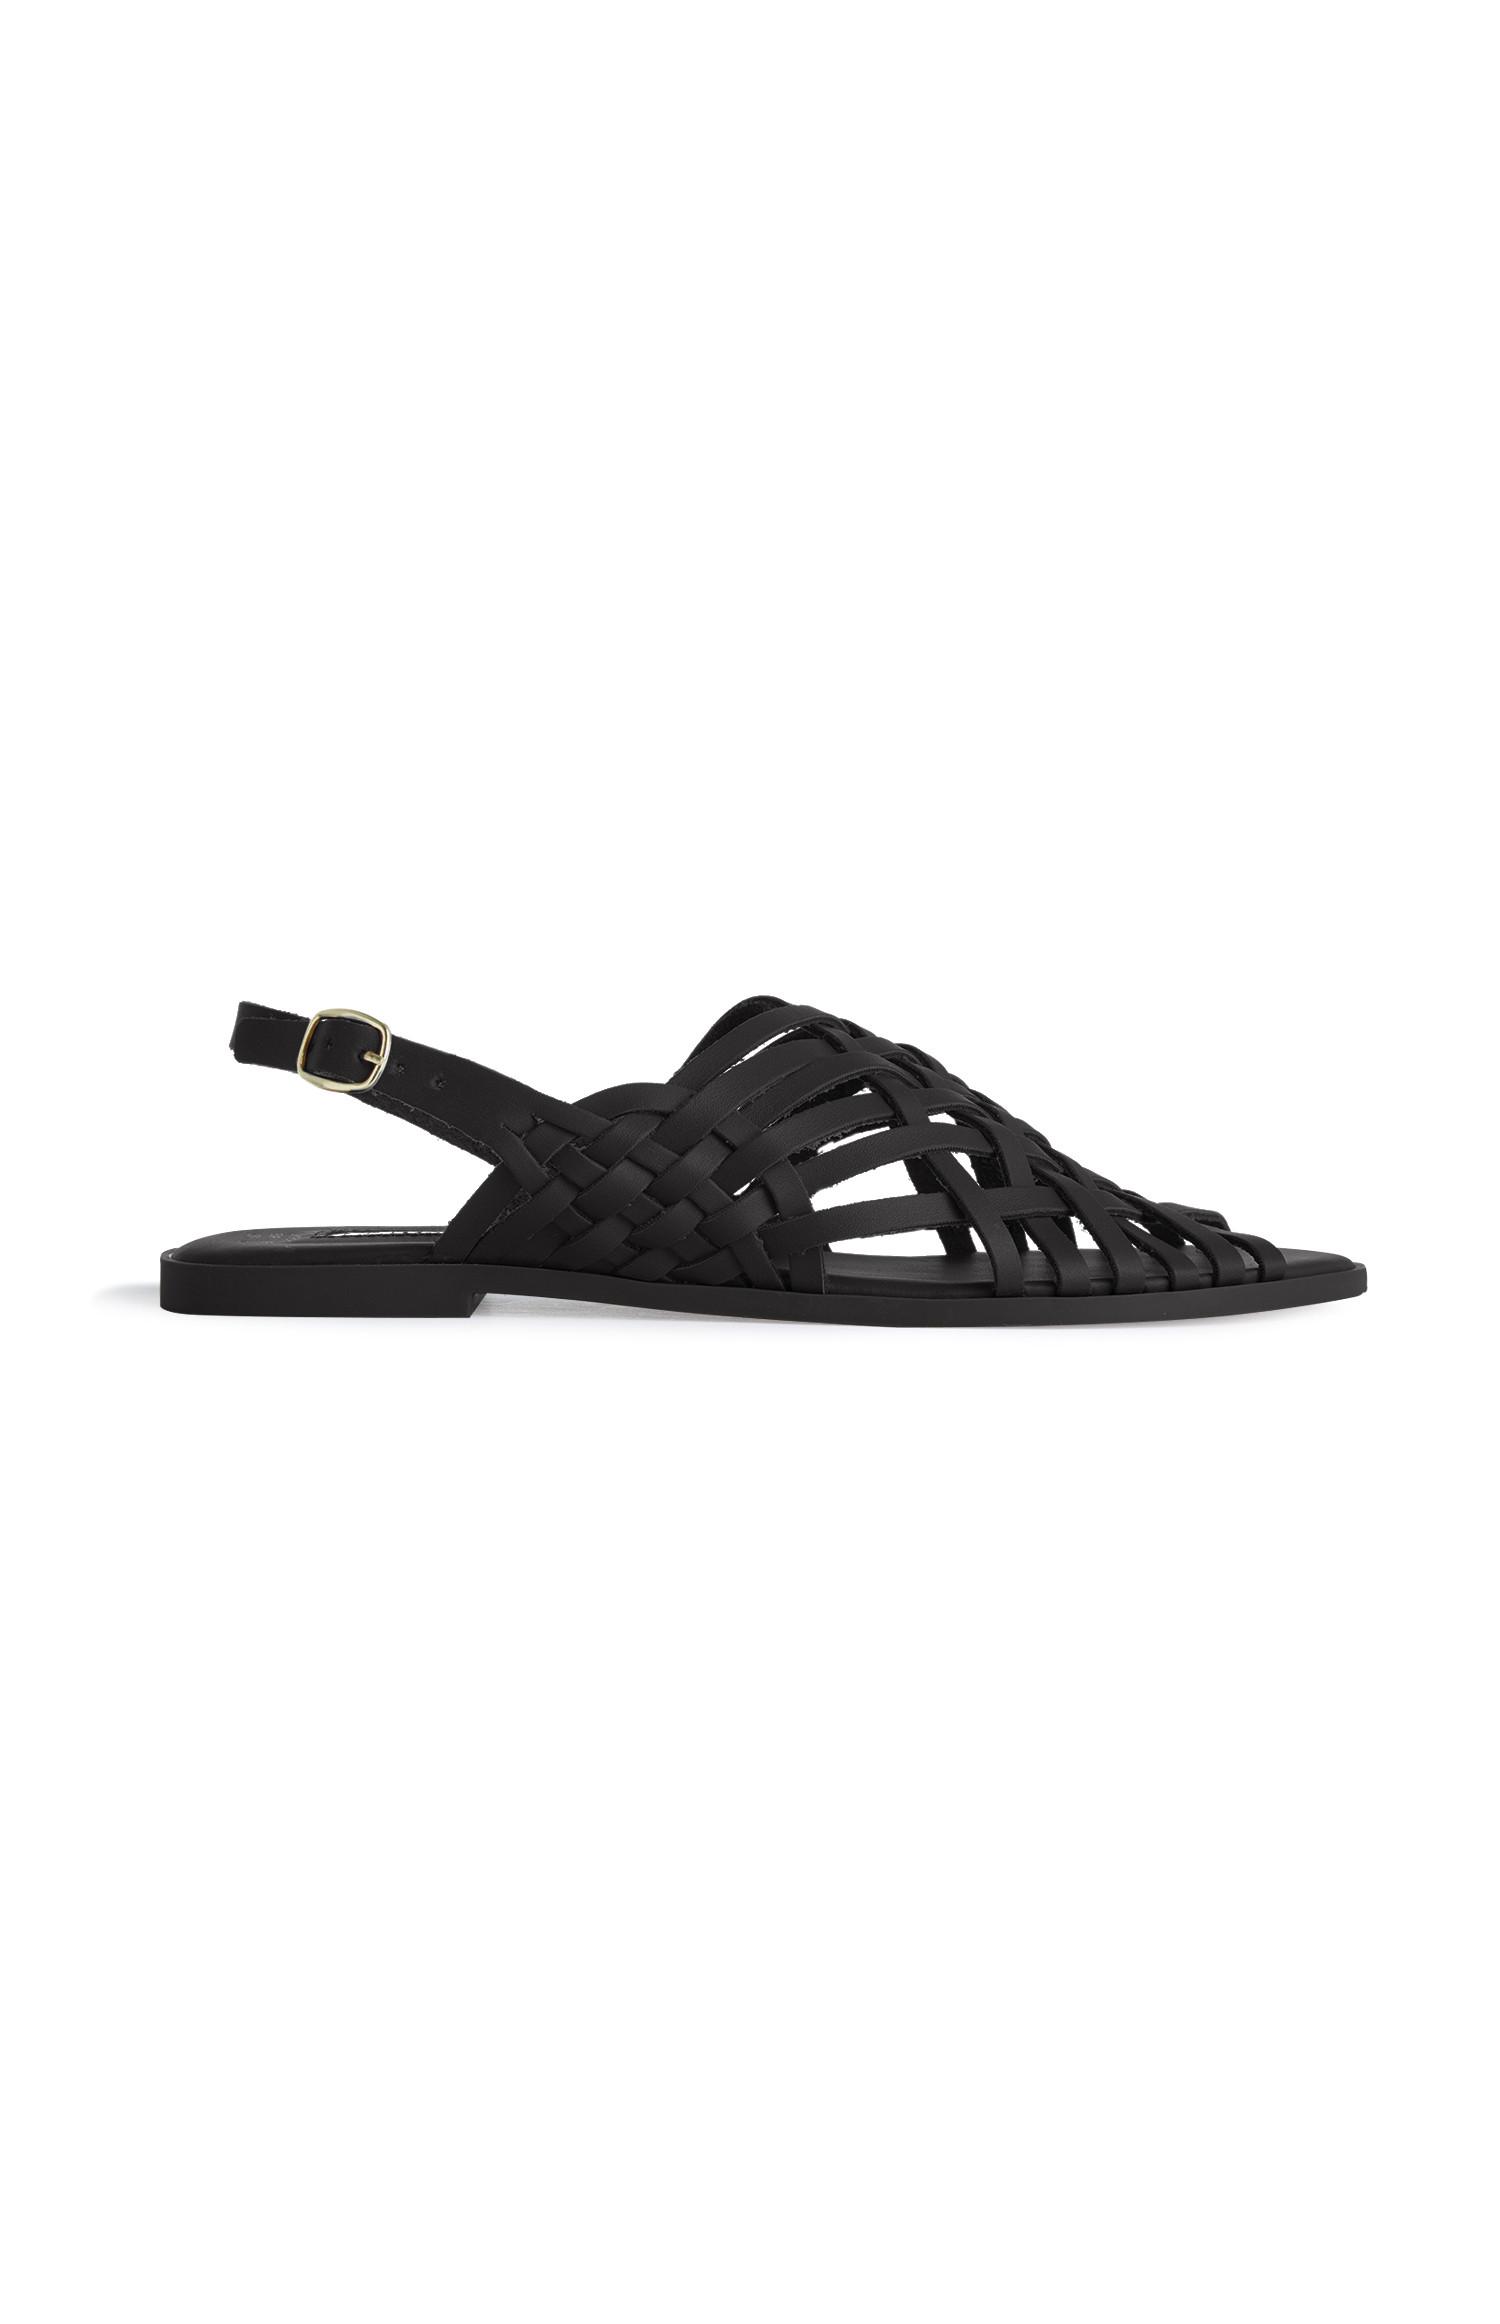 primark black sandals